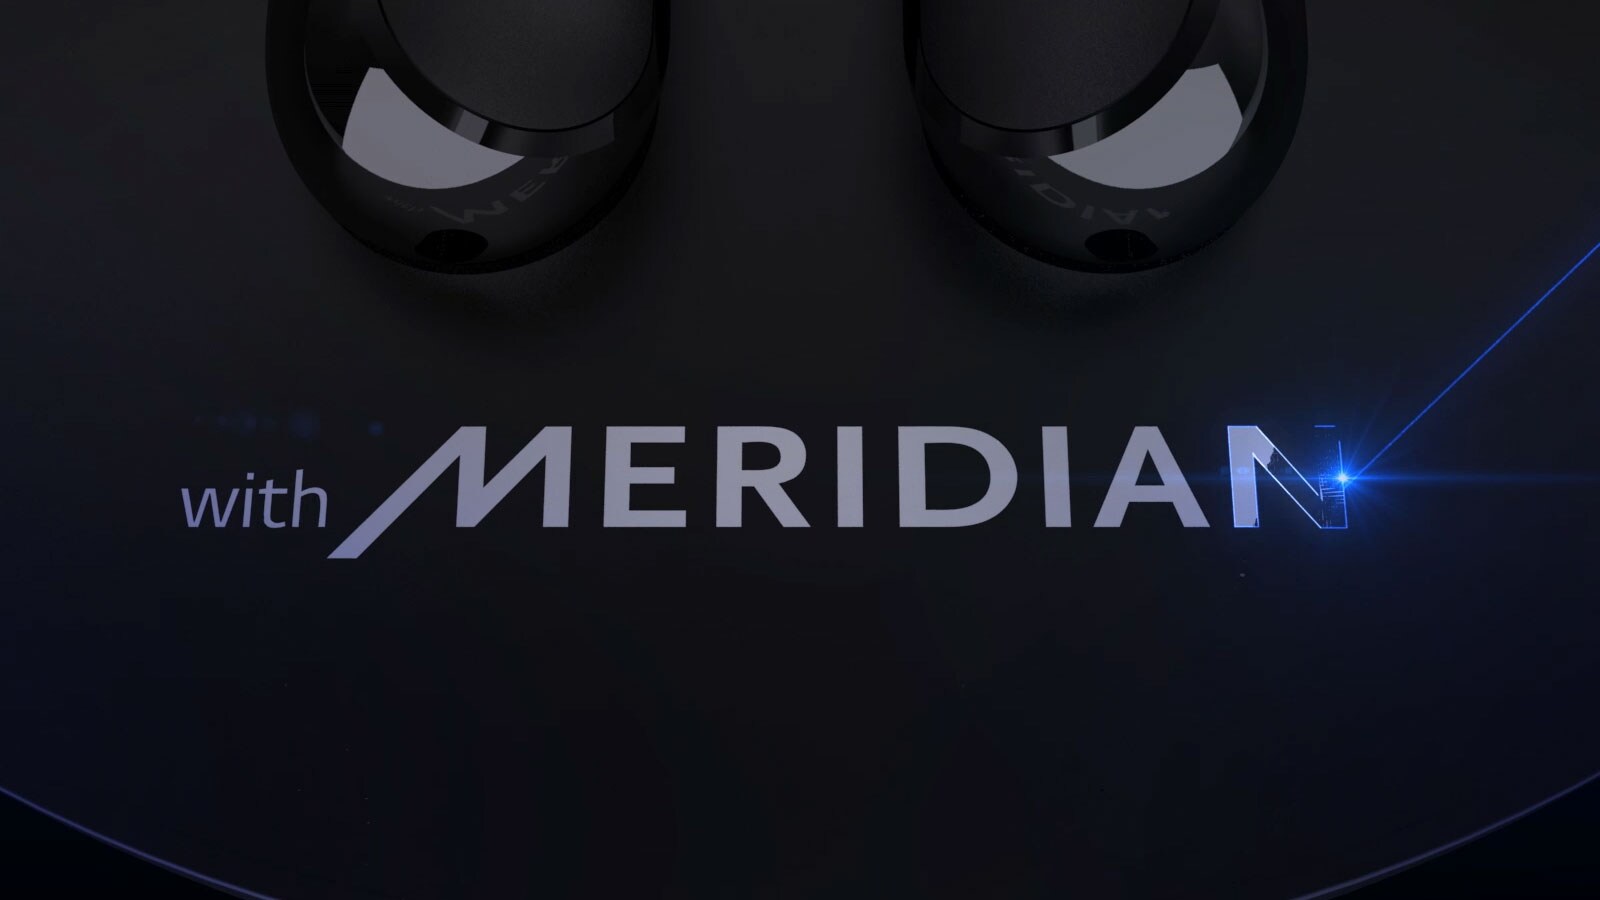 "with MERIDIAN" được chạm khắc bằng laser màu xanh.